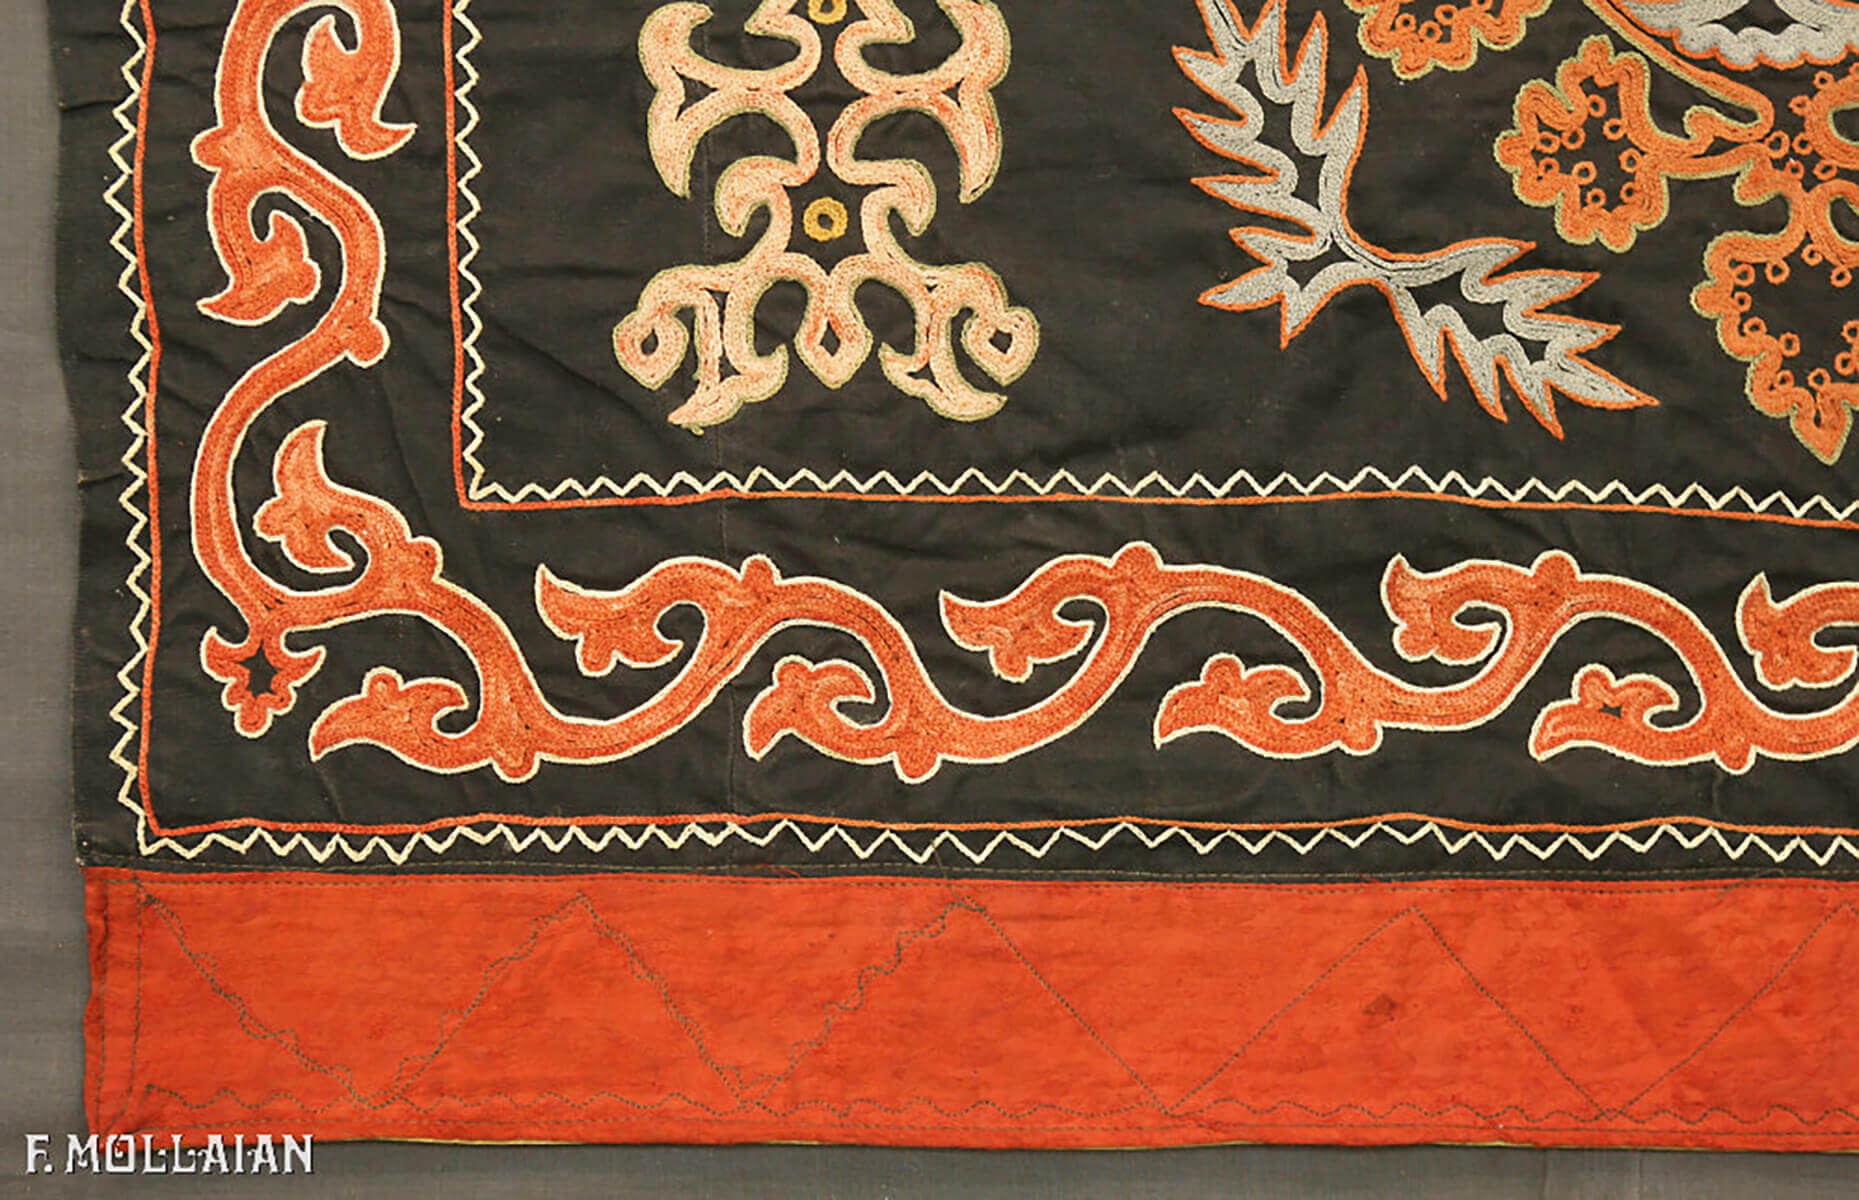 قماش اوزبكيستان أوزبكي أنتيك کد:۳۰۸۷۹۱۹۰